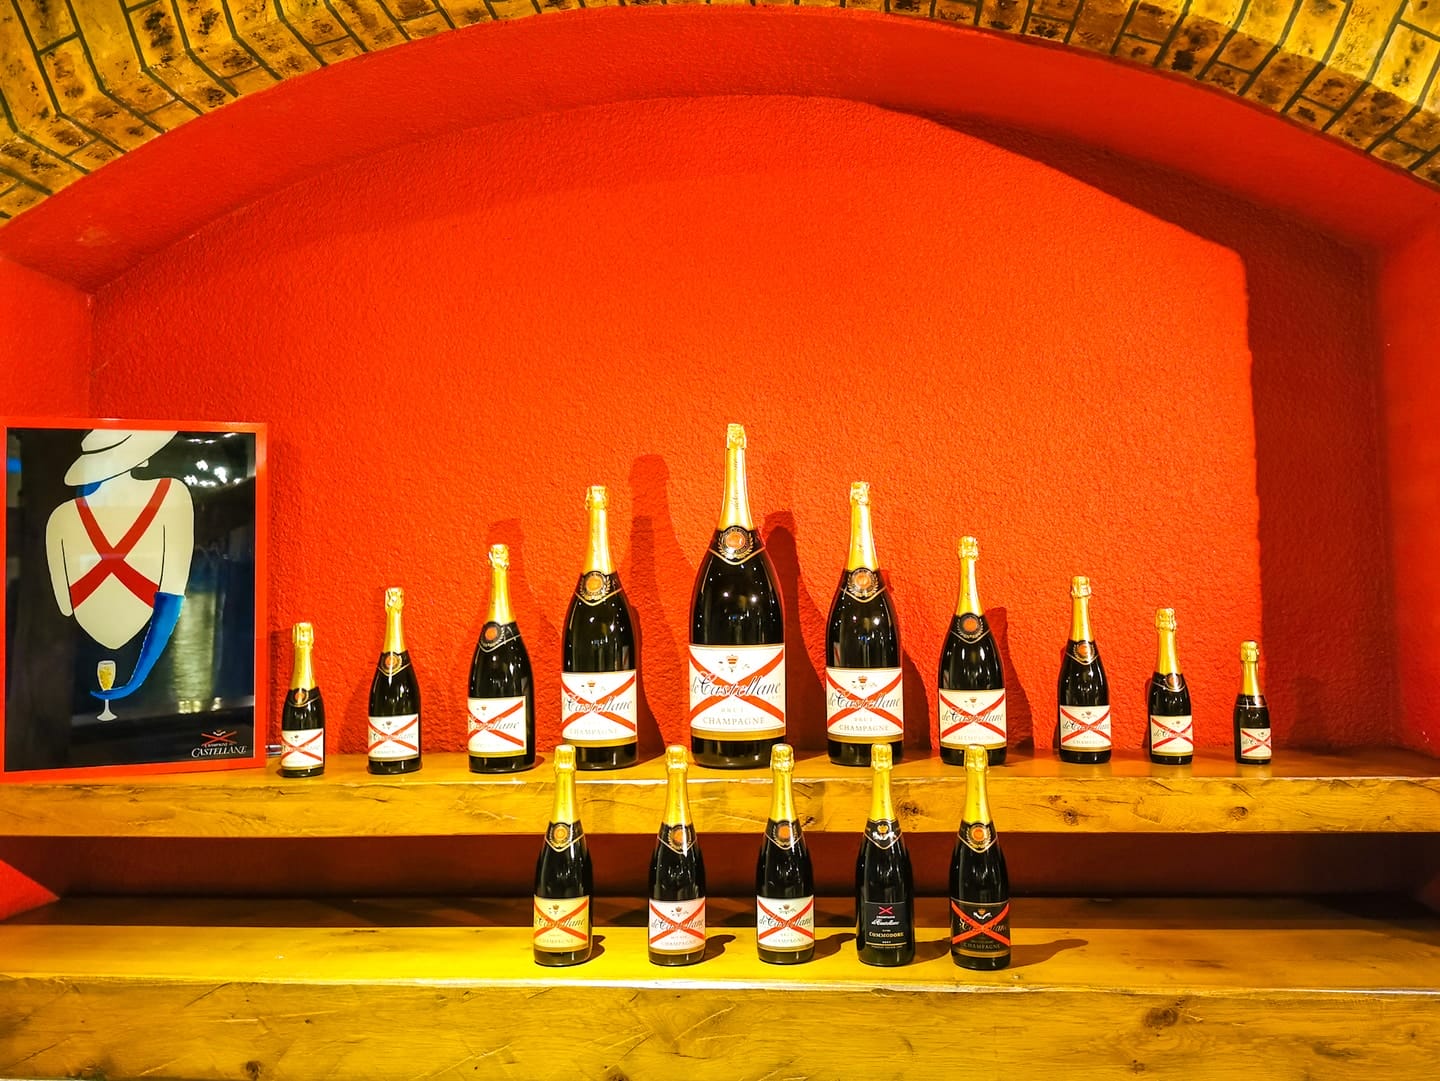 Visite Champagne de Castellane
Dégustation de Champagne